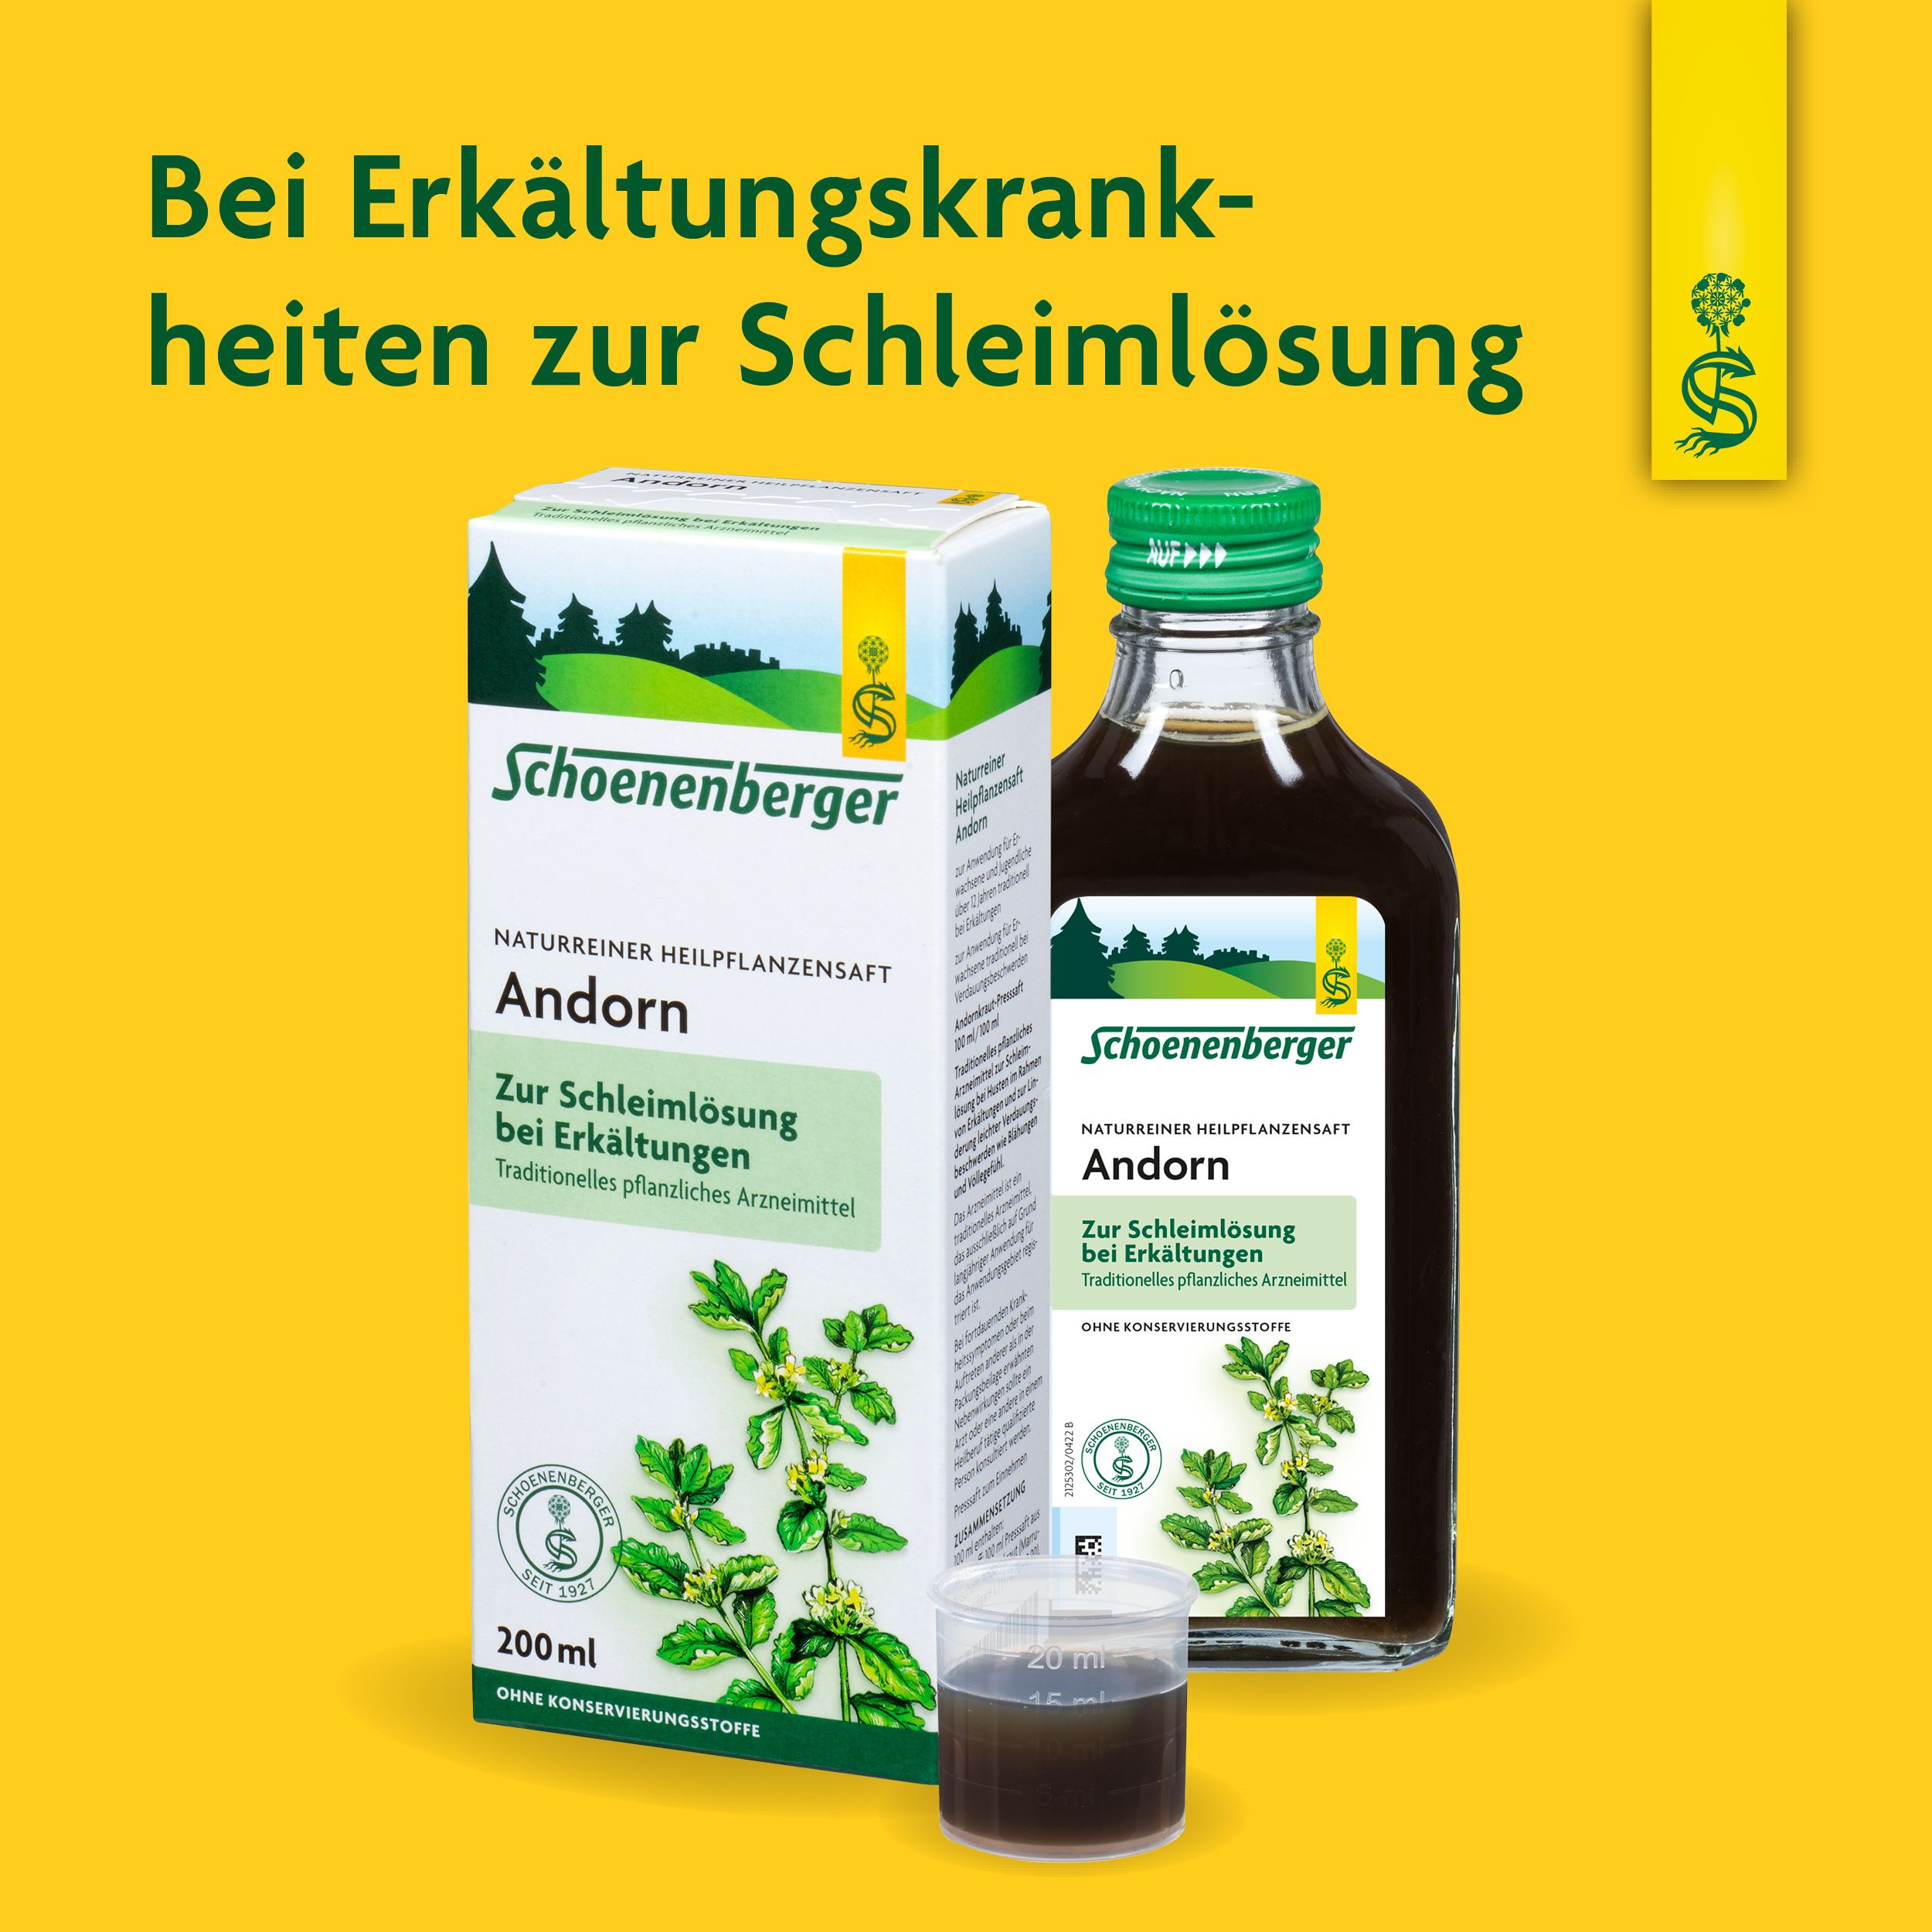 Schoenenberger® naturreiner Heilpflazensaft Andorn